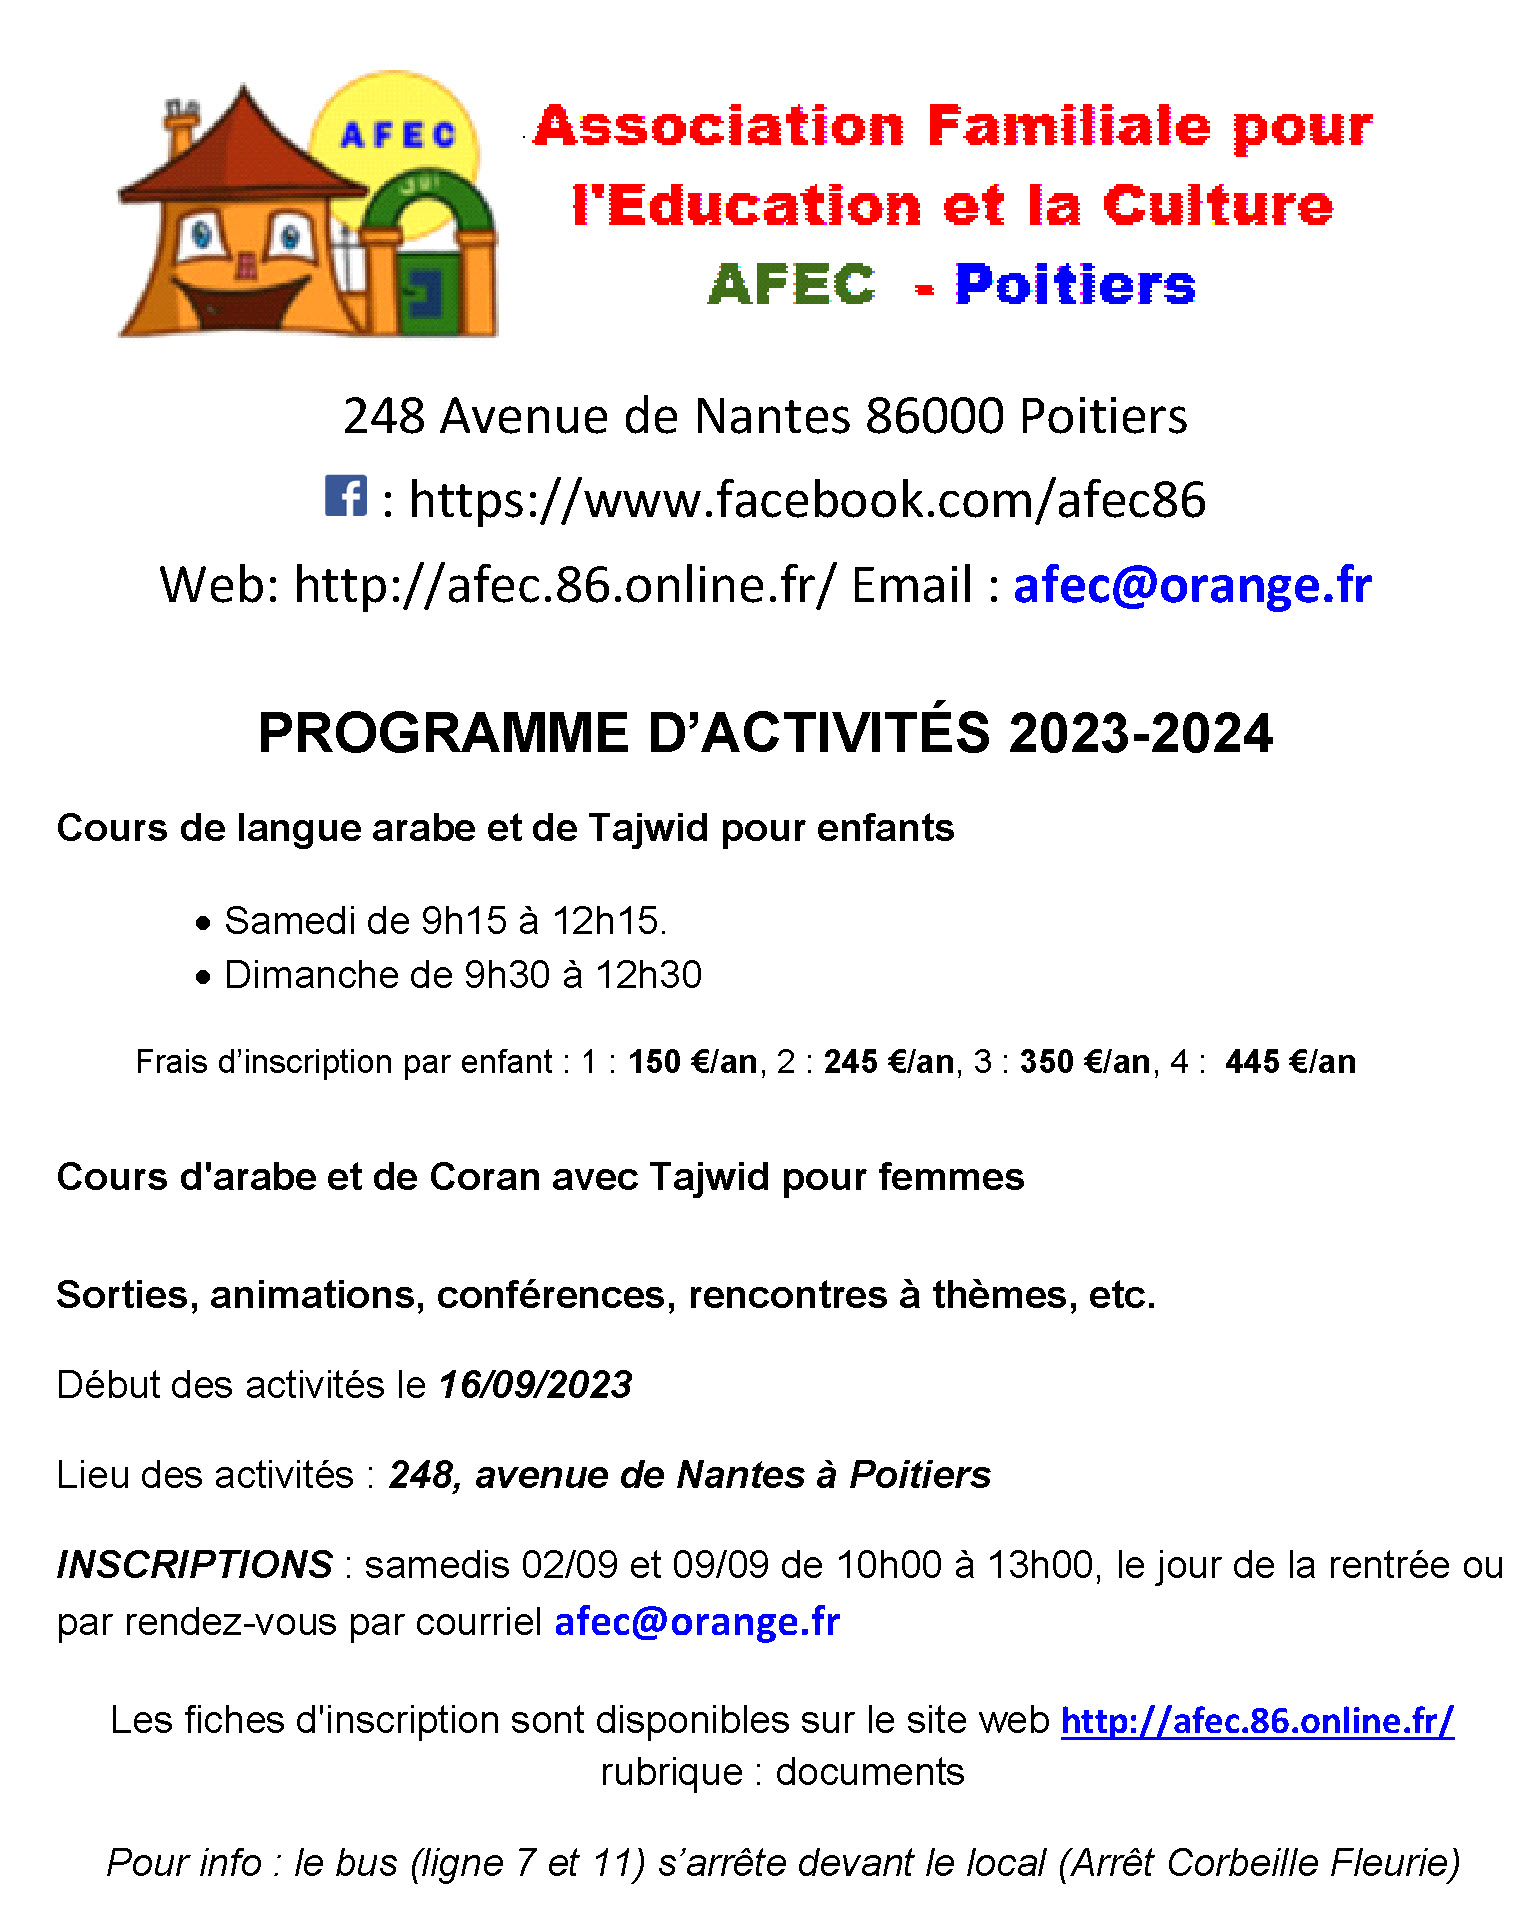 AFEC_Programe_Activites_2023_2024.jpg